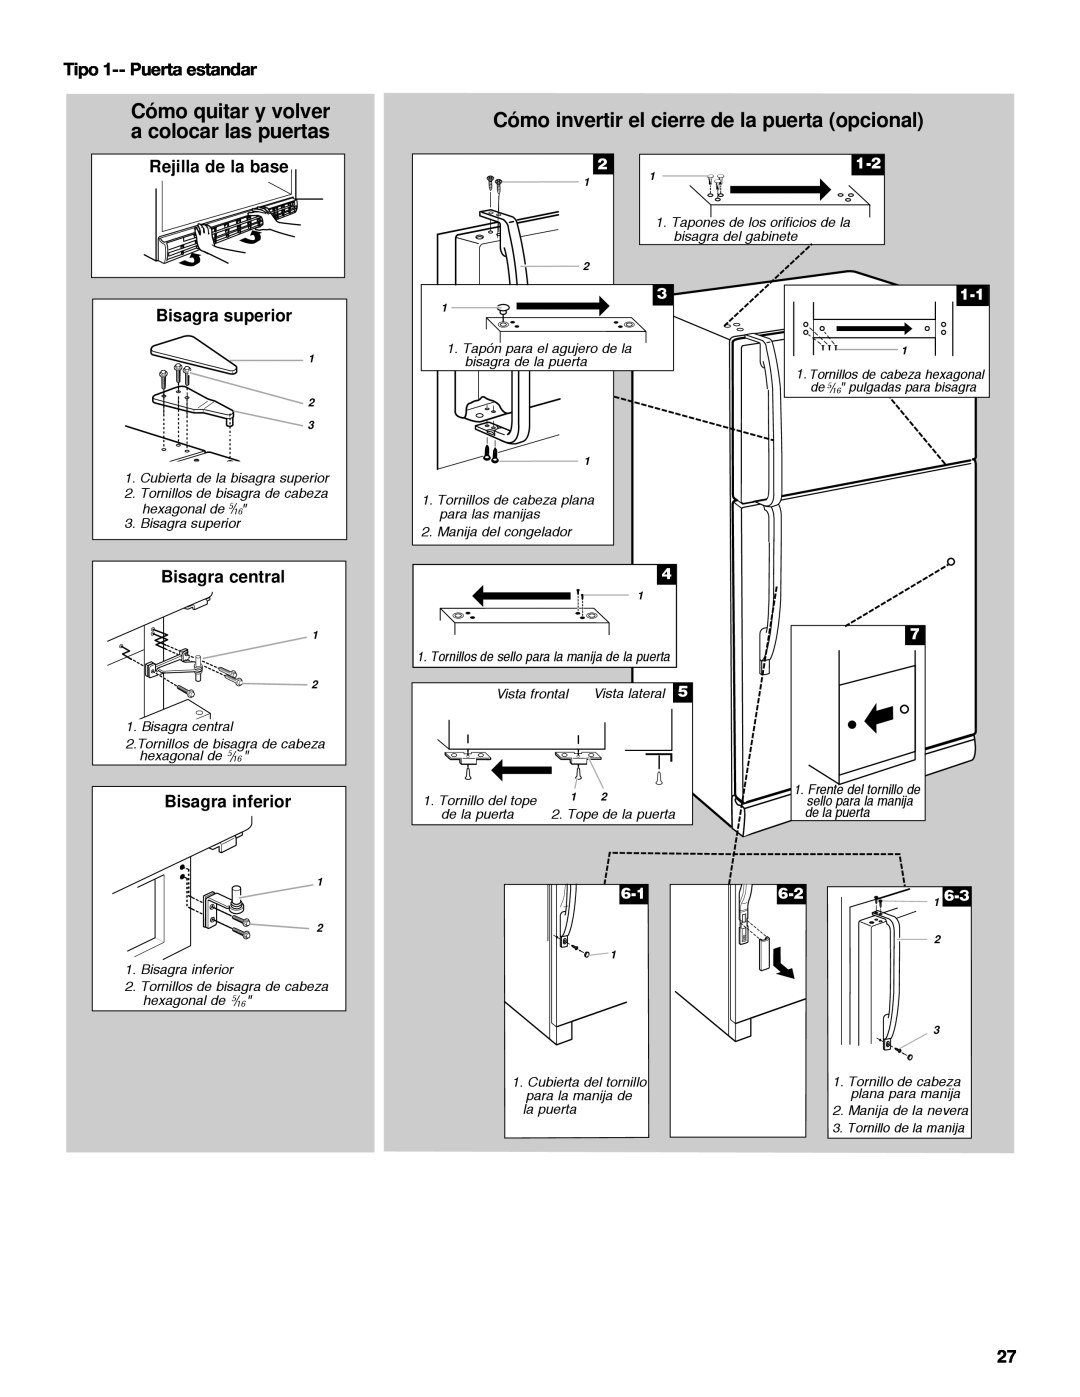 Whirlpool 2218585 manual Cómo invertir el cierre de la puerta opcional, Cómo quitar y volver a colocar las puertas 